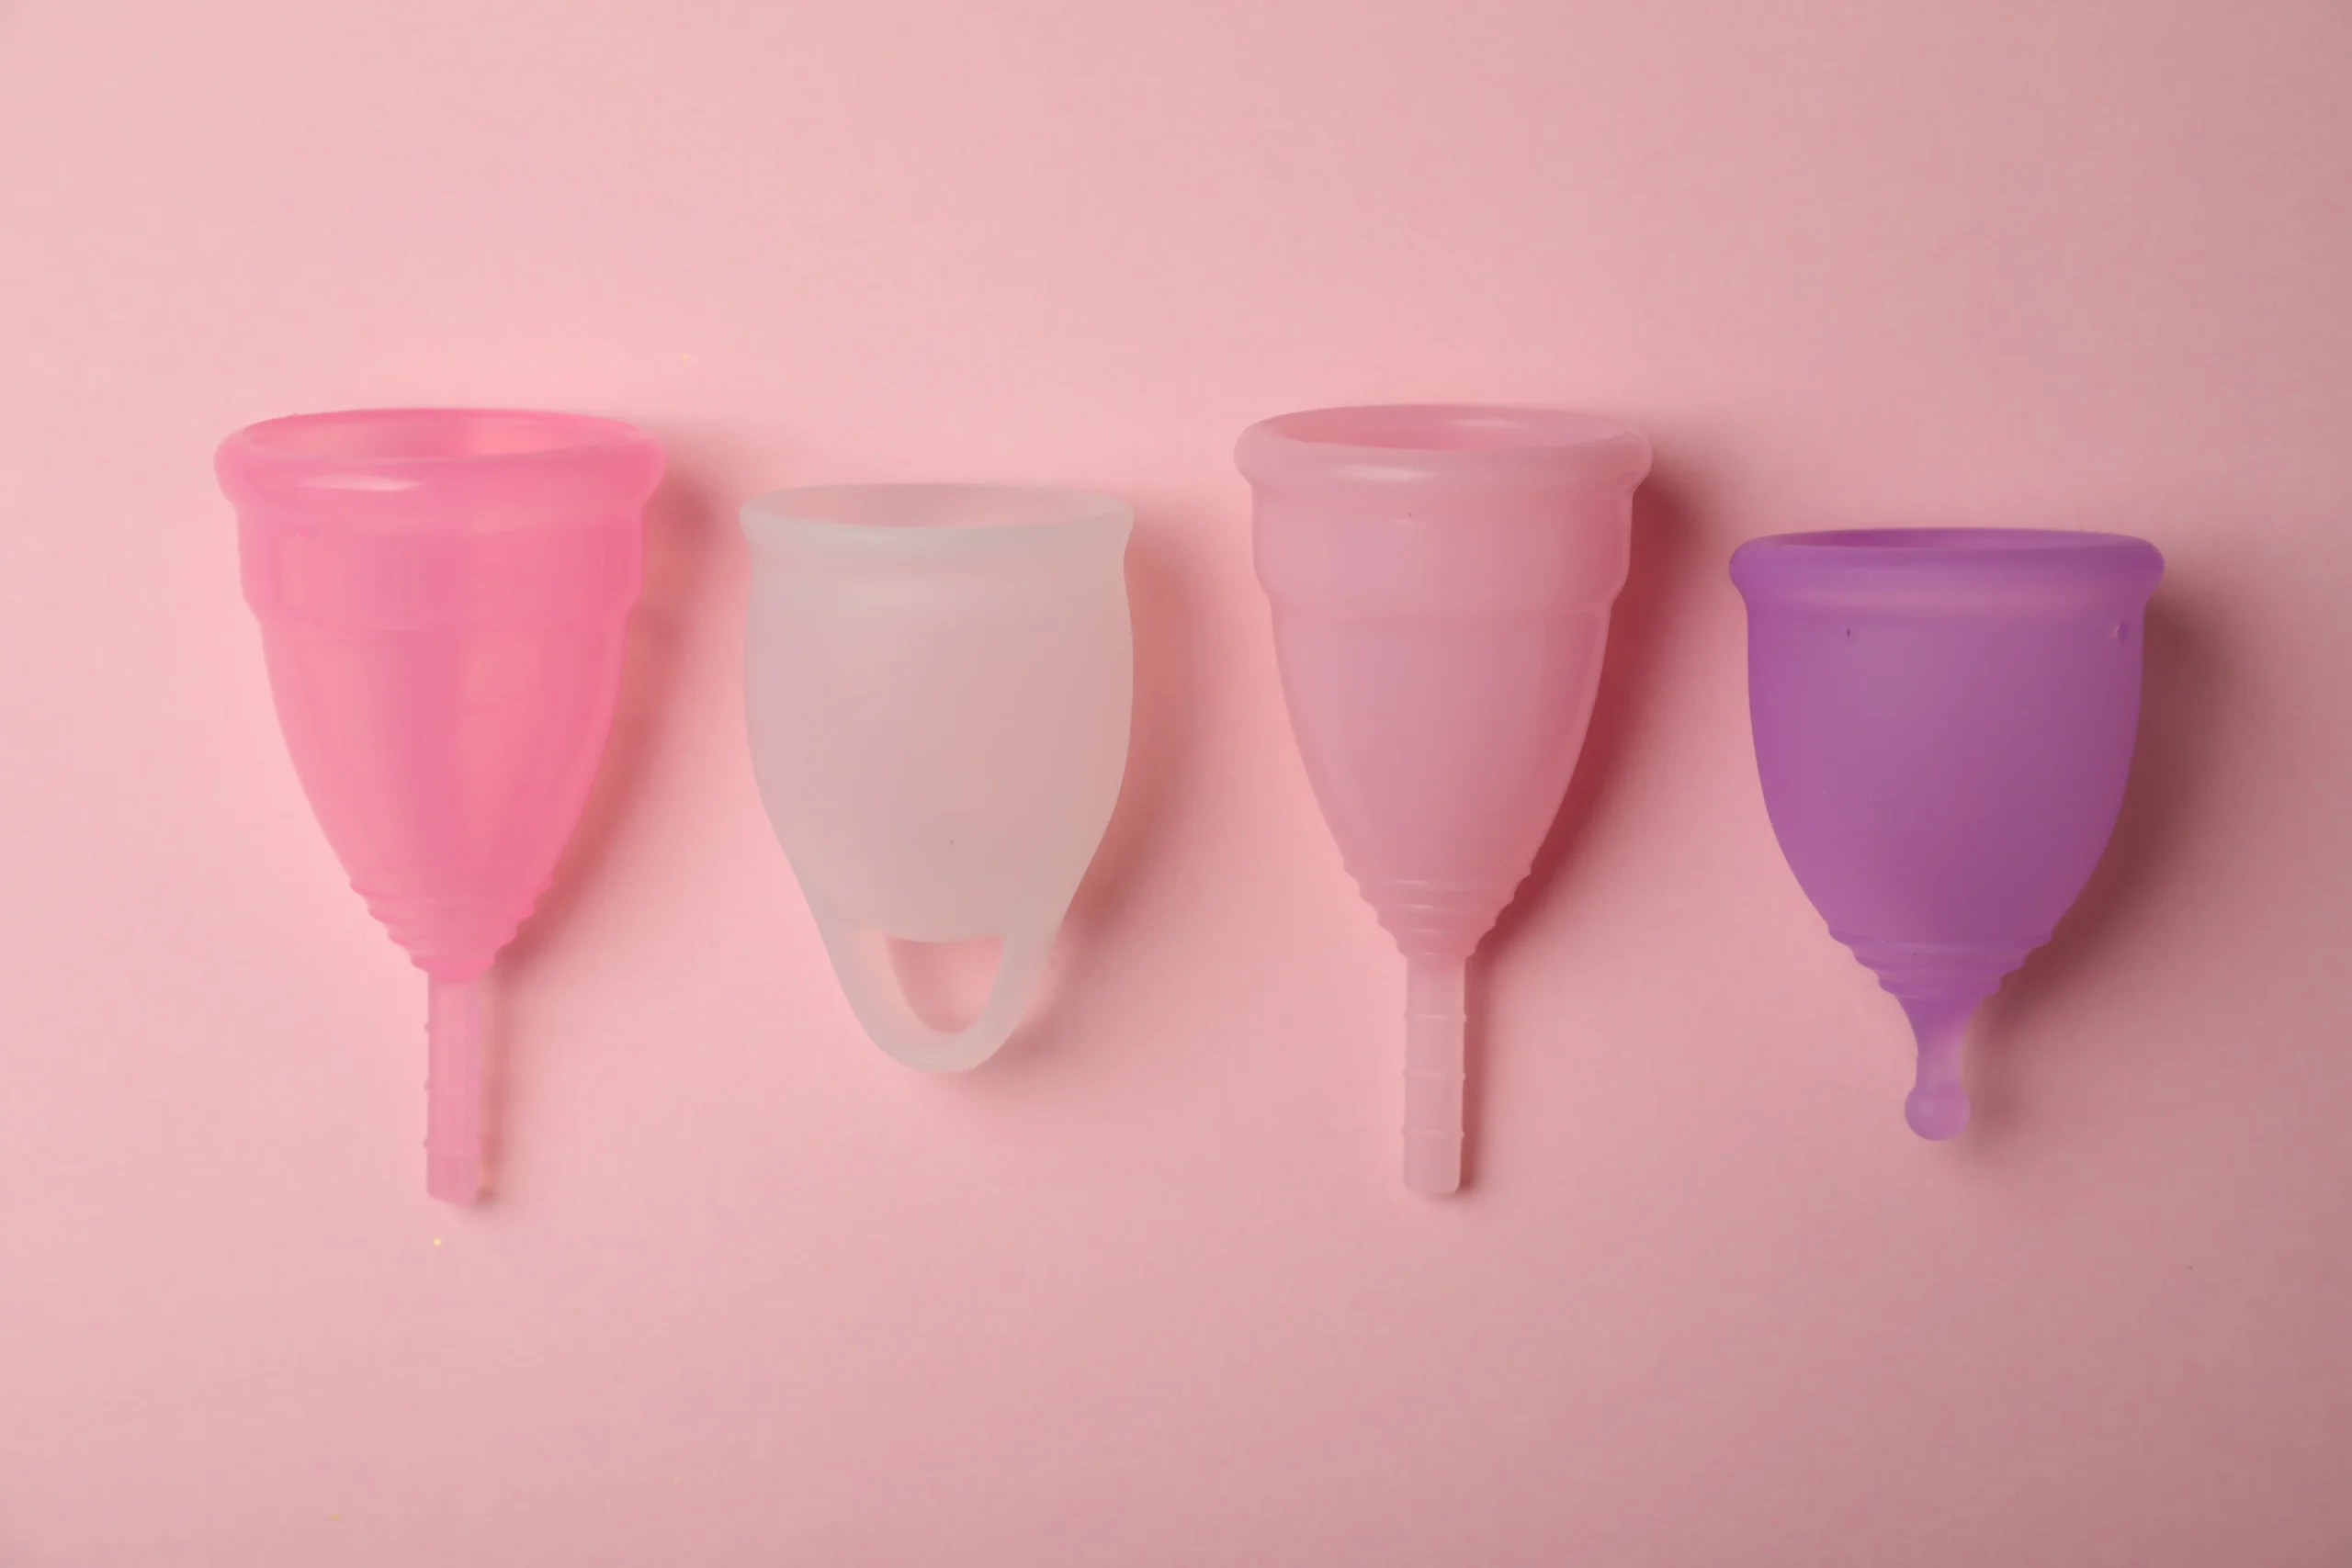 Vários tipos de coletores menstruais